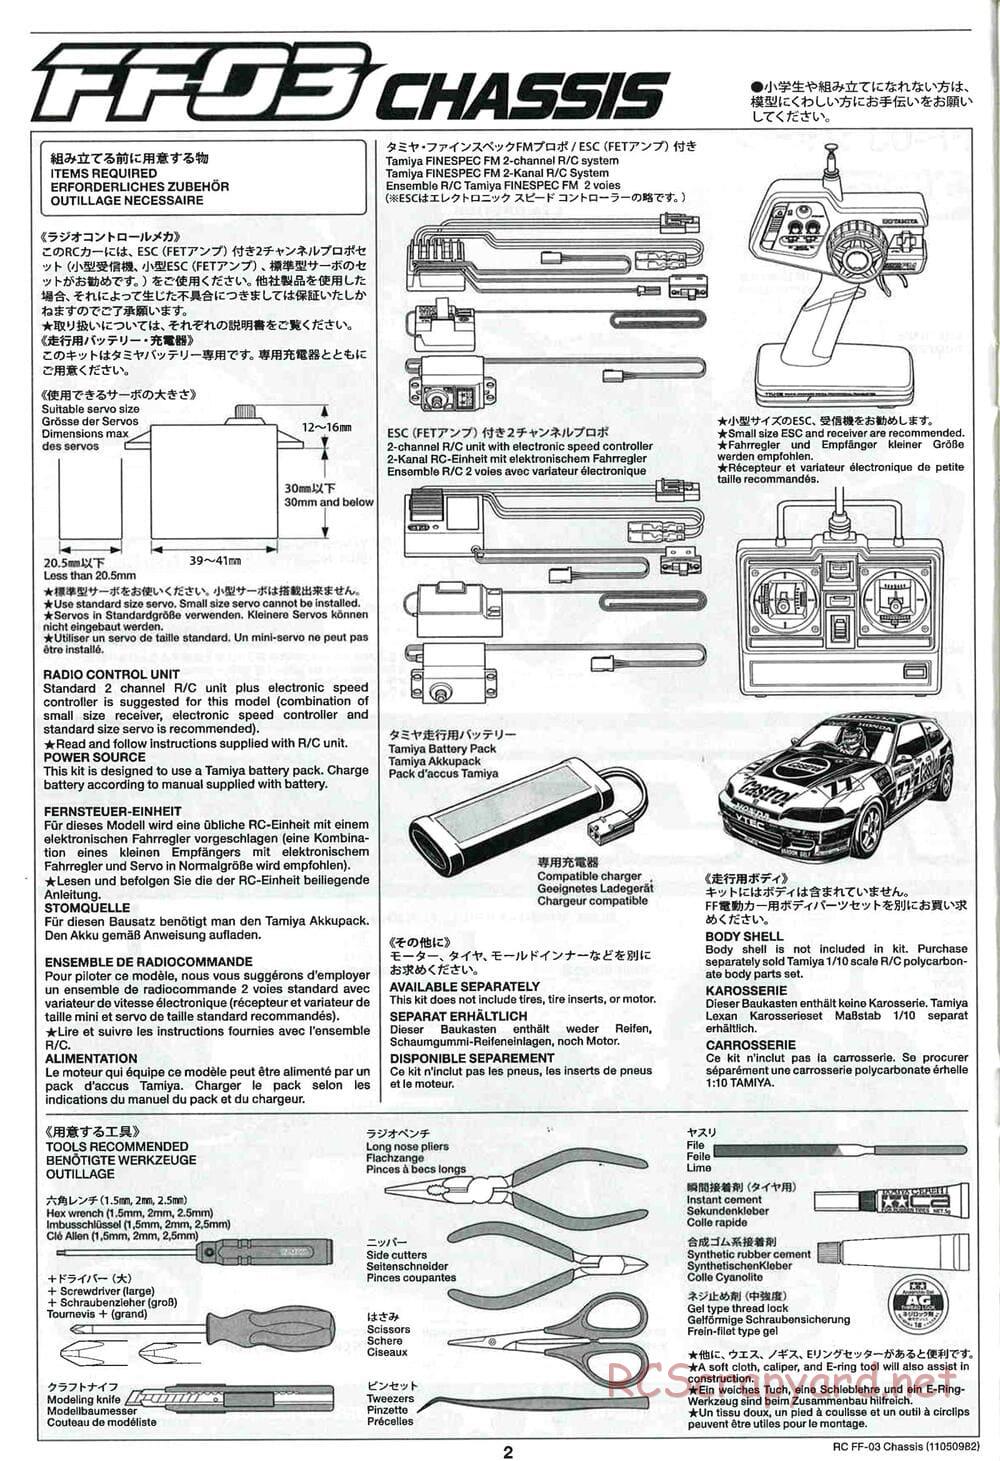 Tamiya - Honda Accord Aero Custom - FF-03 Chassis - Manual - Page 2